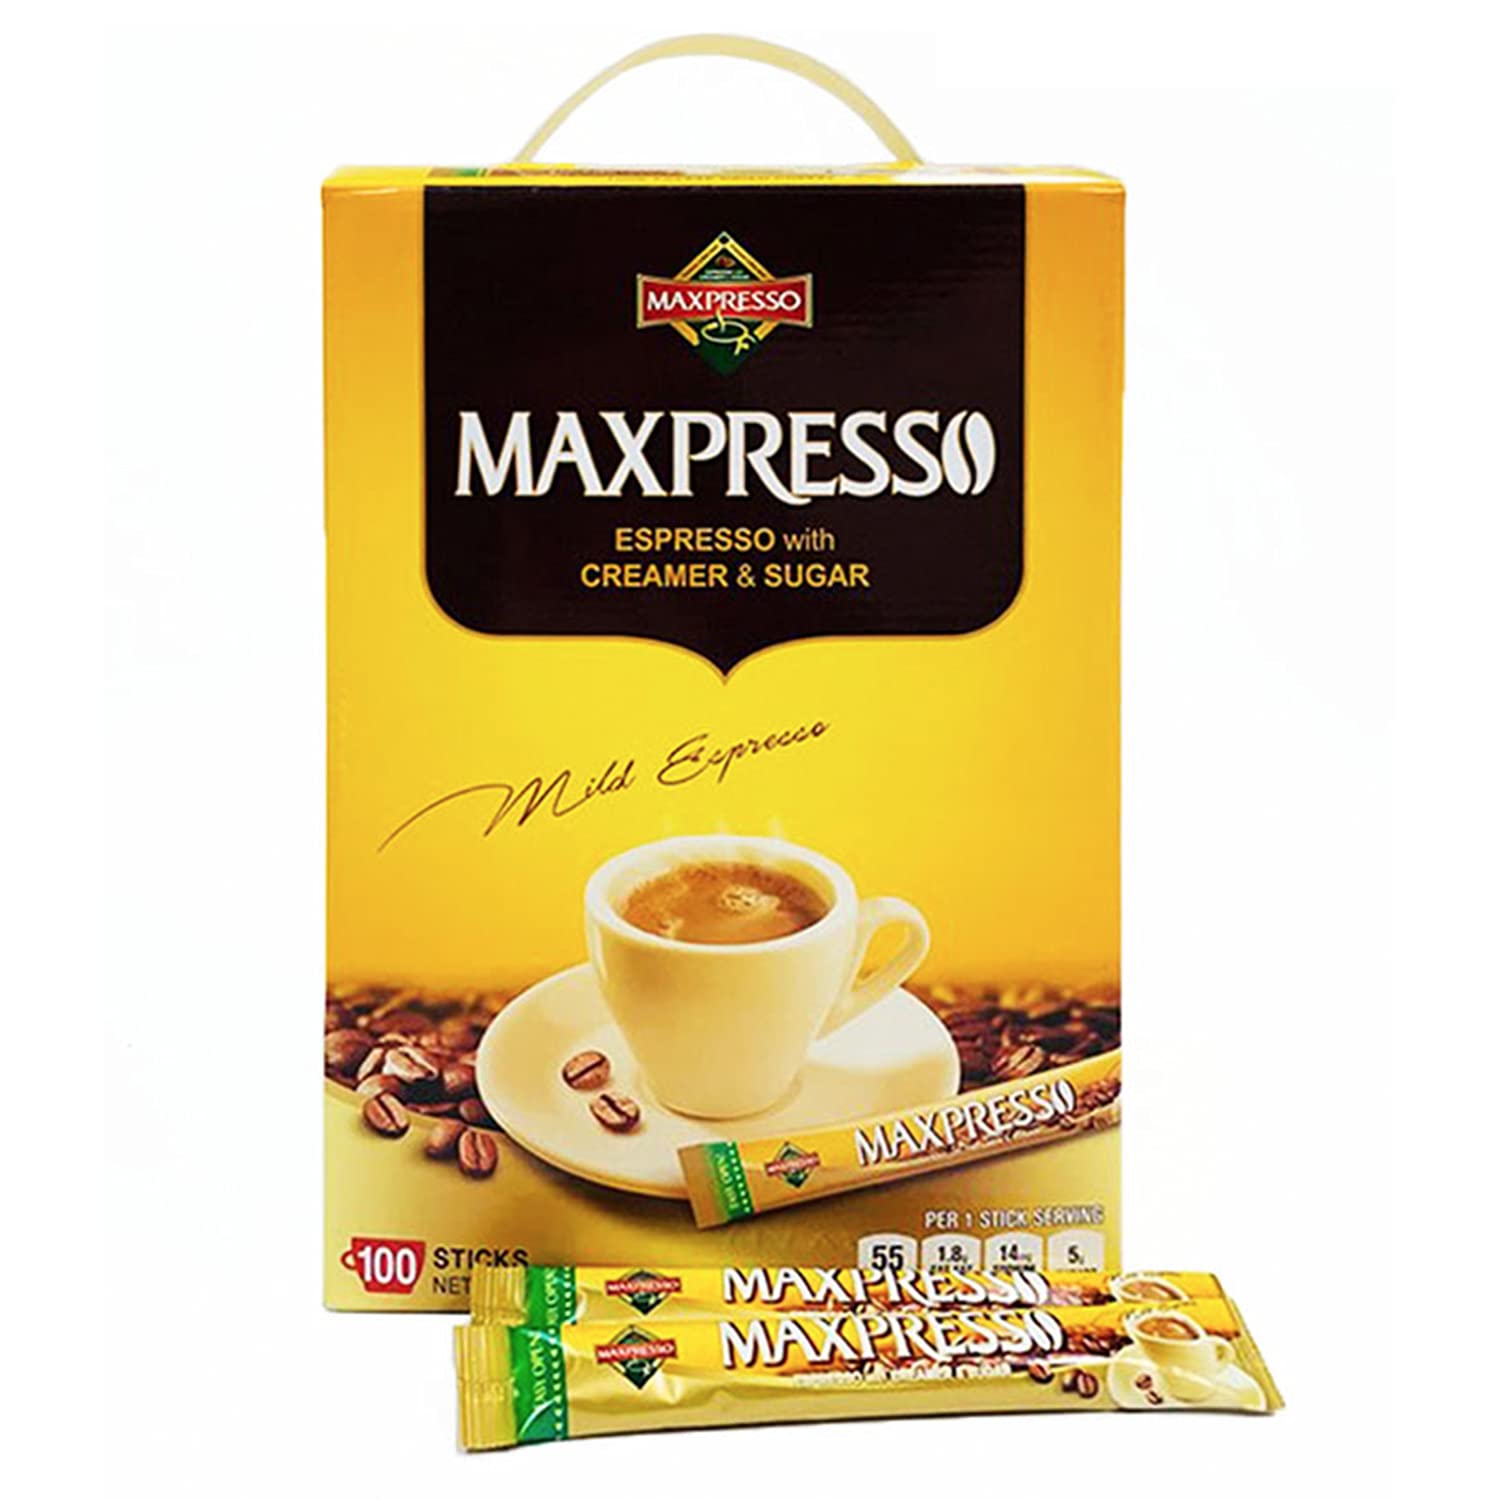 Maxpresso Coffee